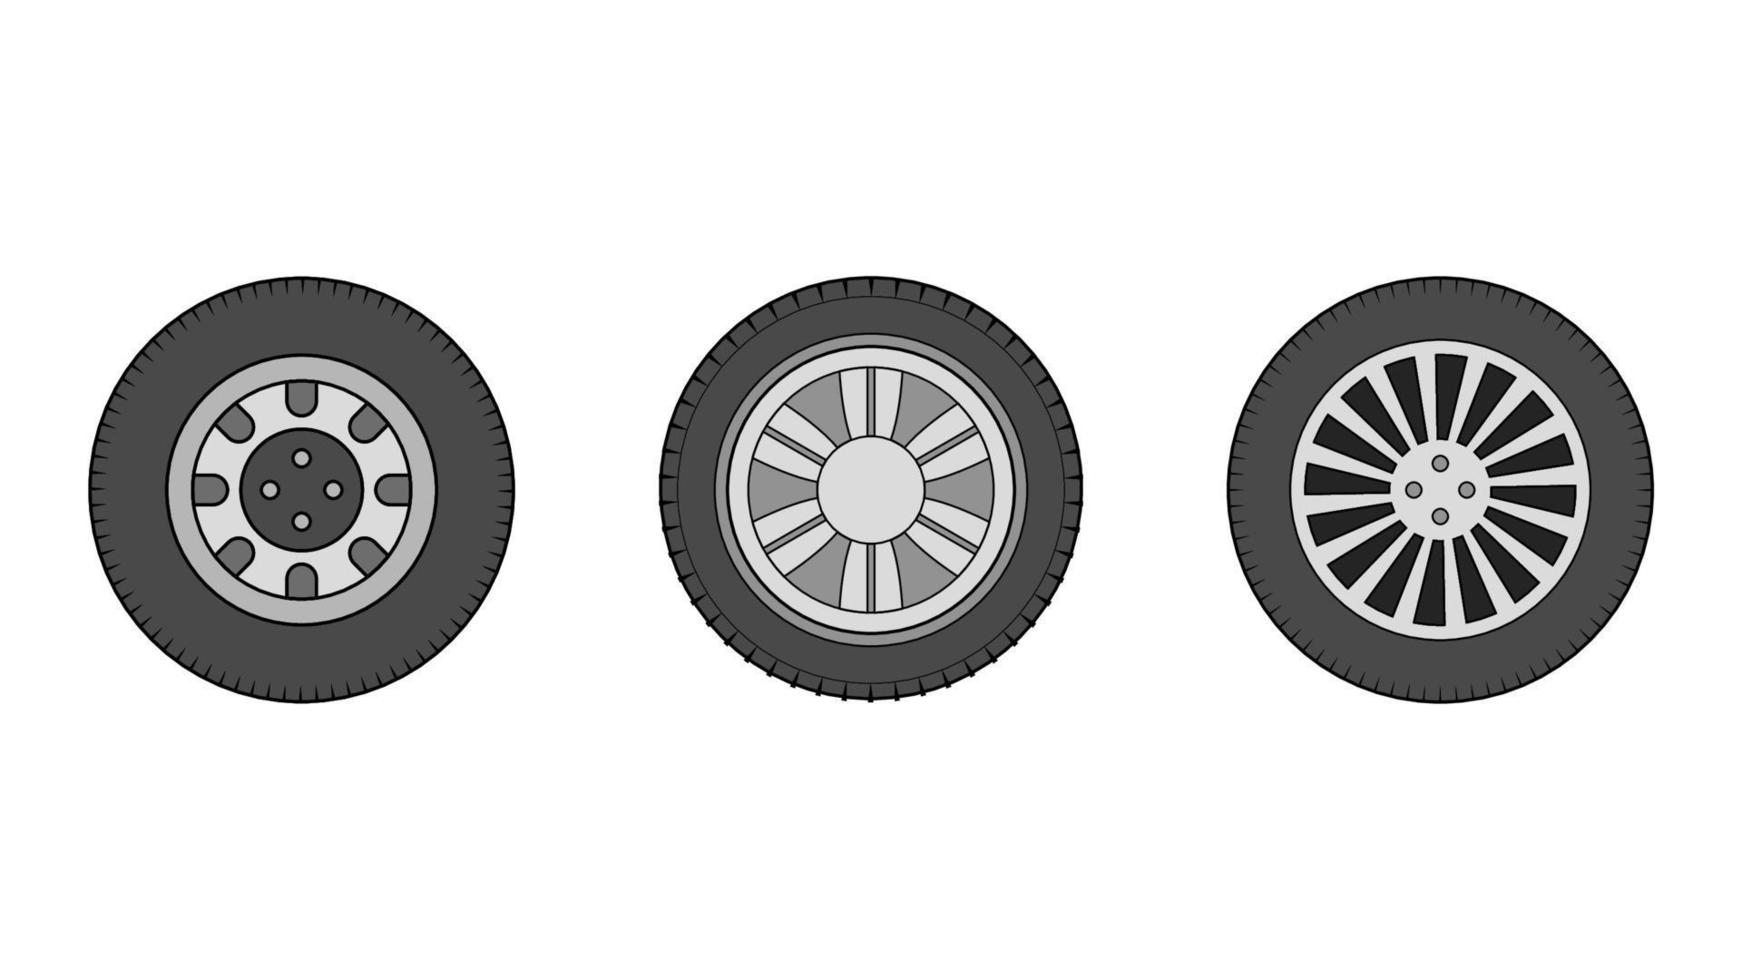 objet de roue défini illustration vectorielle sur fond blanc, vecteur d'objet de pneu